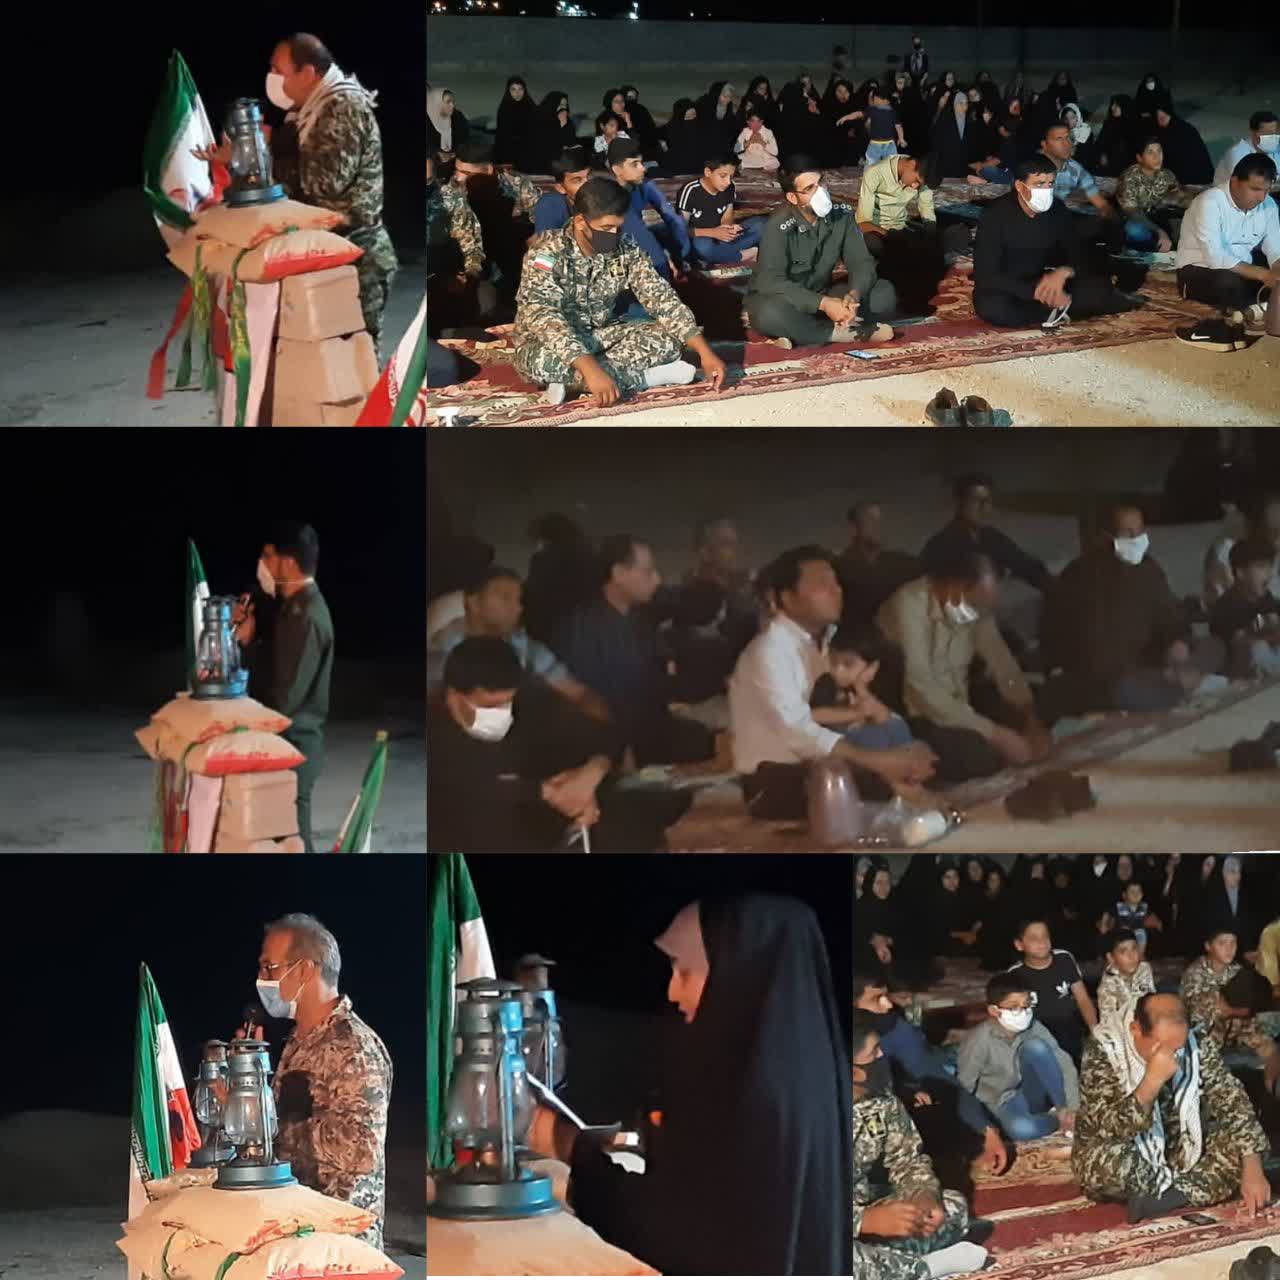 برگزاری مراسم شبی با شهدا با همت بسیج فرهنگیان در یکی از روستاهای توابع علامرودشت روستای خِشتی